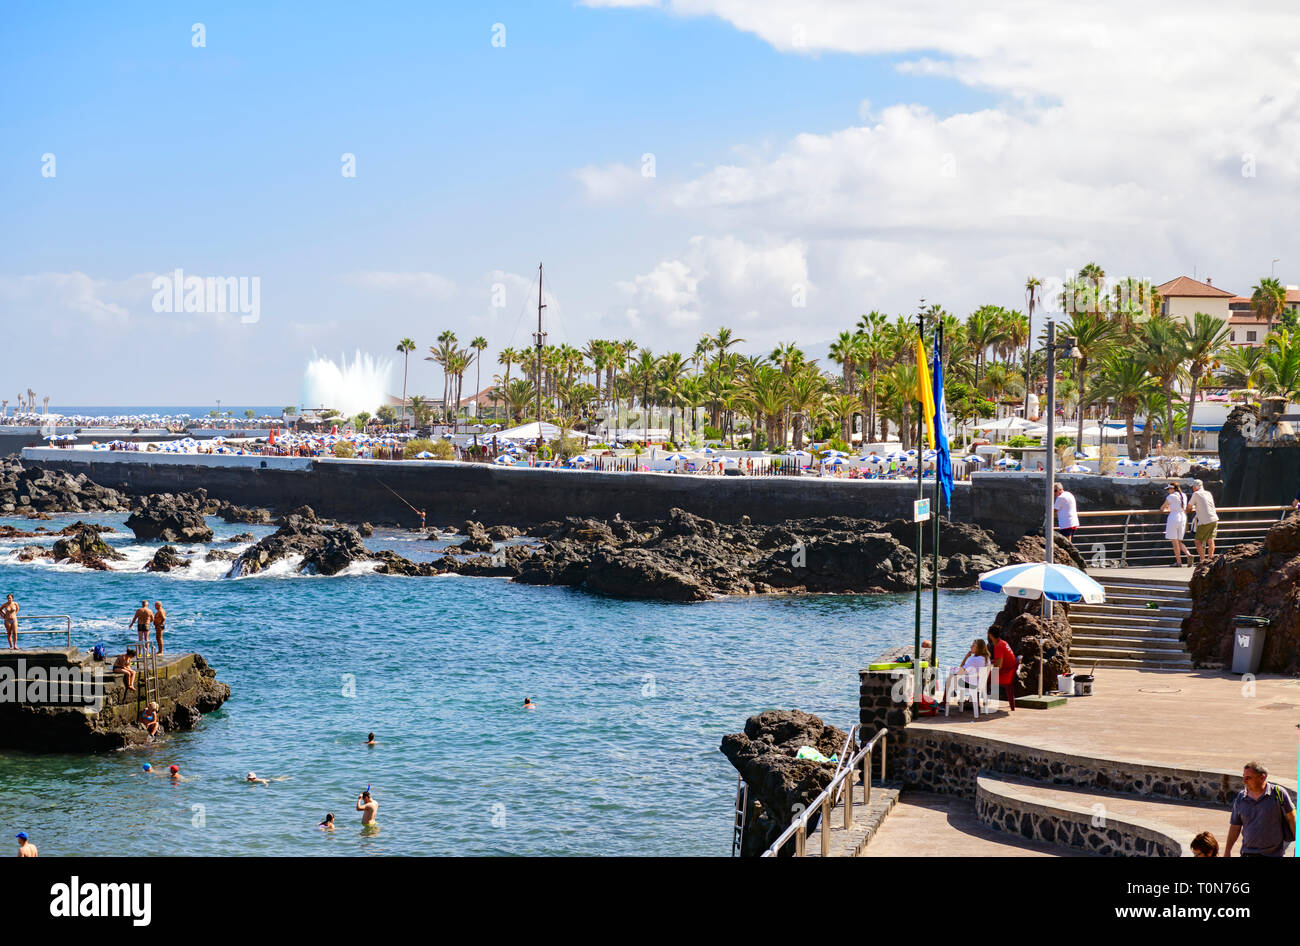 View of the water park, puerto de la cruz, Tenerife Stock Photo